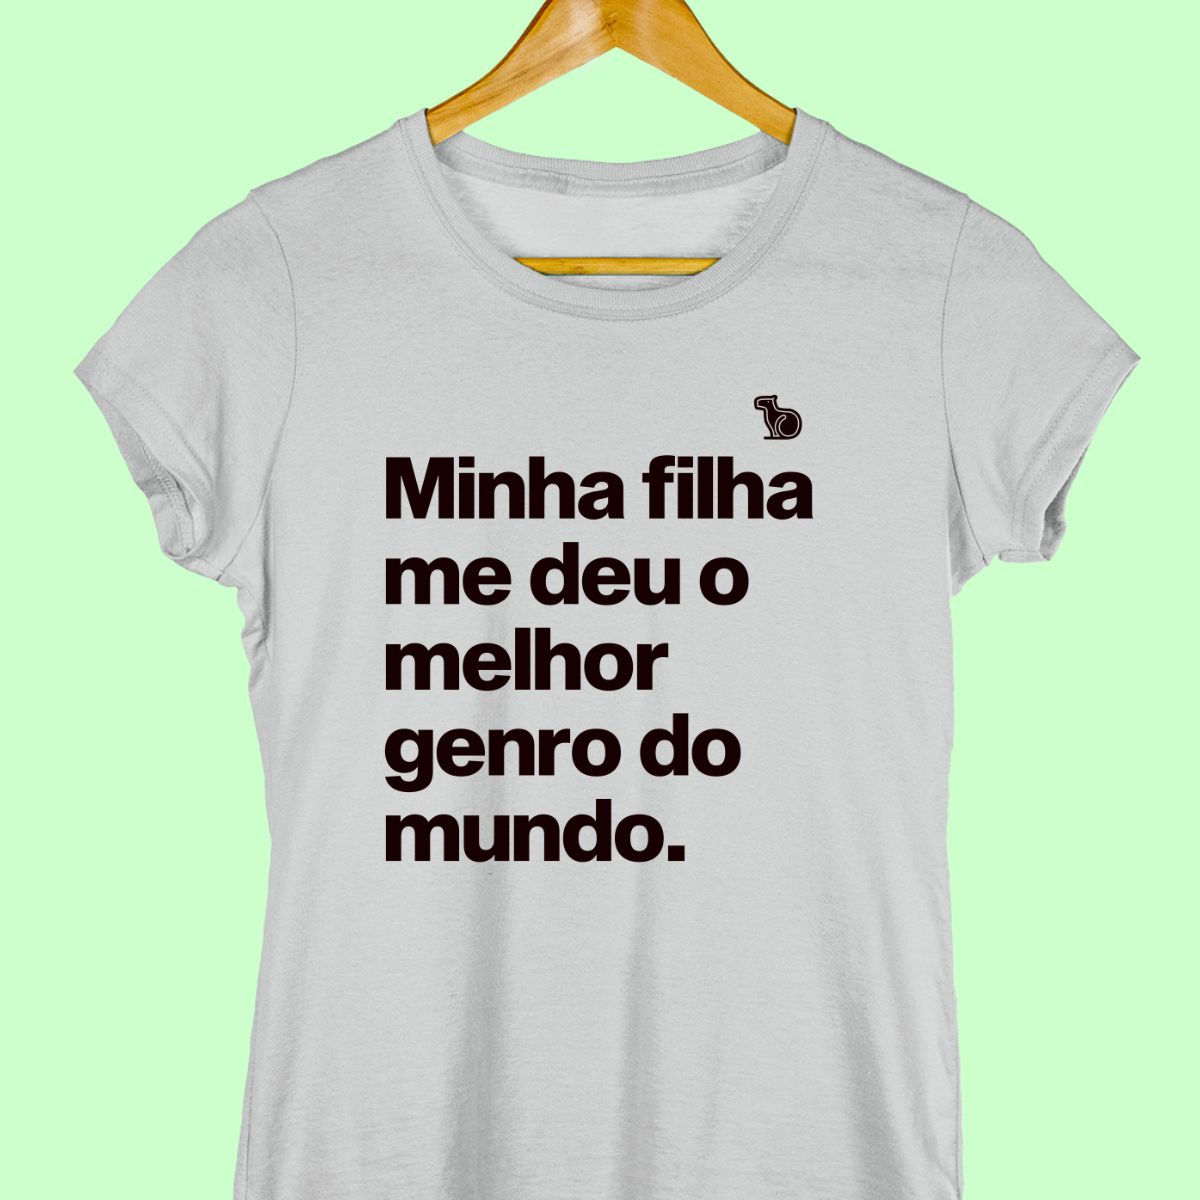 Imagem da Camiseta Feminina na cor cinza com a frase "Minha filha me deu o melhor genro do mundo".